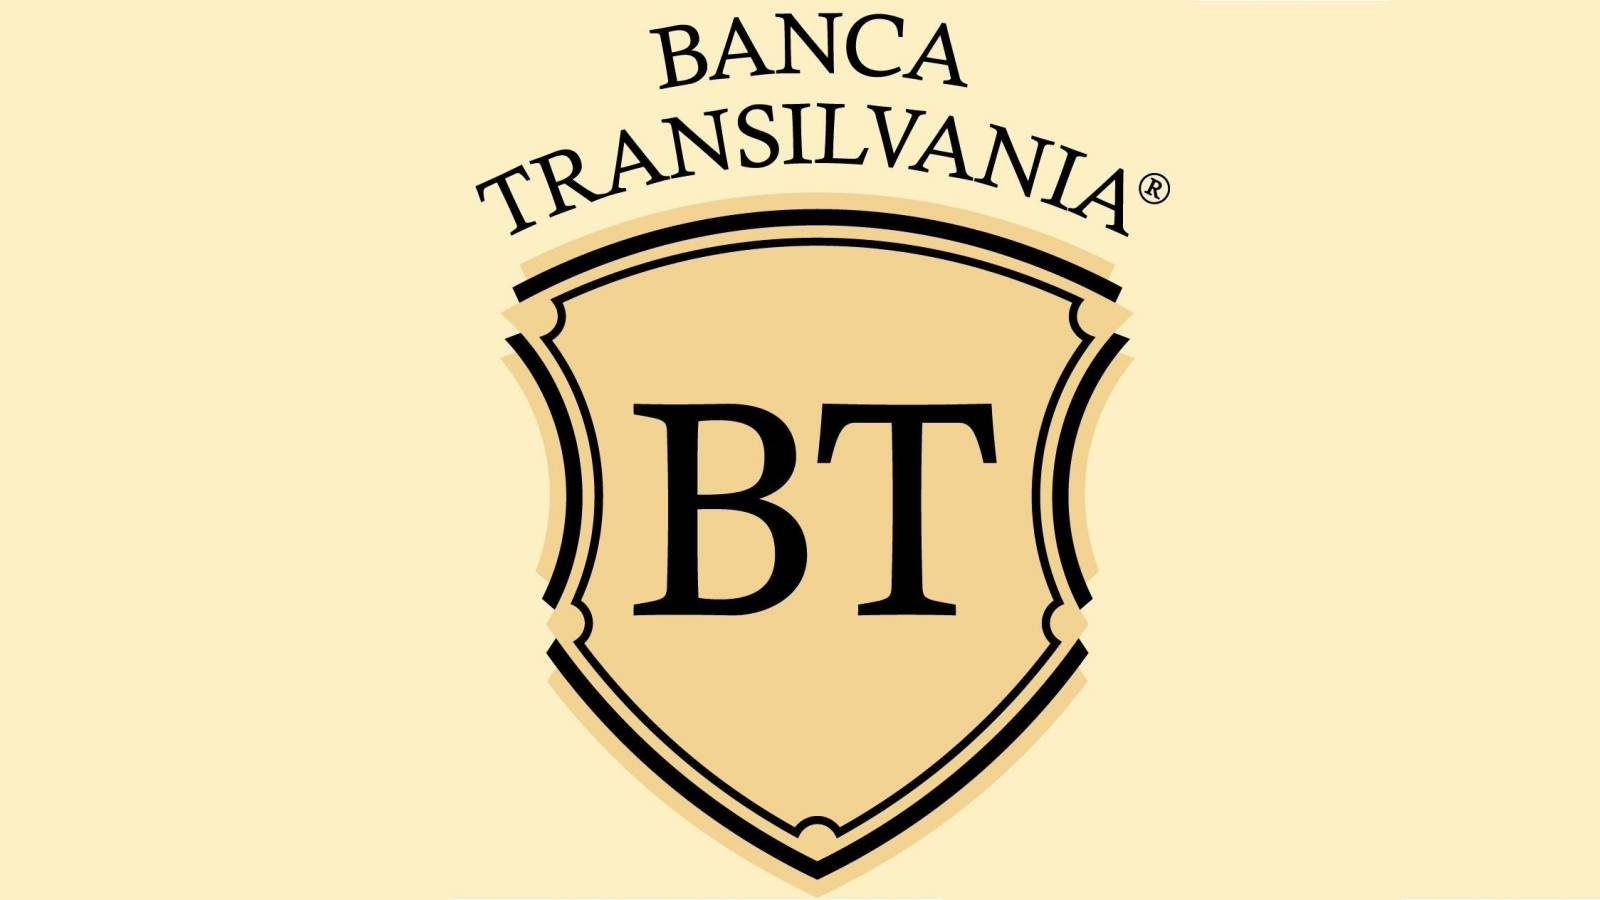 Mesures officielles de BANCA Transilvania décidées par la DERNIÈRE MINUTE Roumanie Annonce importante de la banque